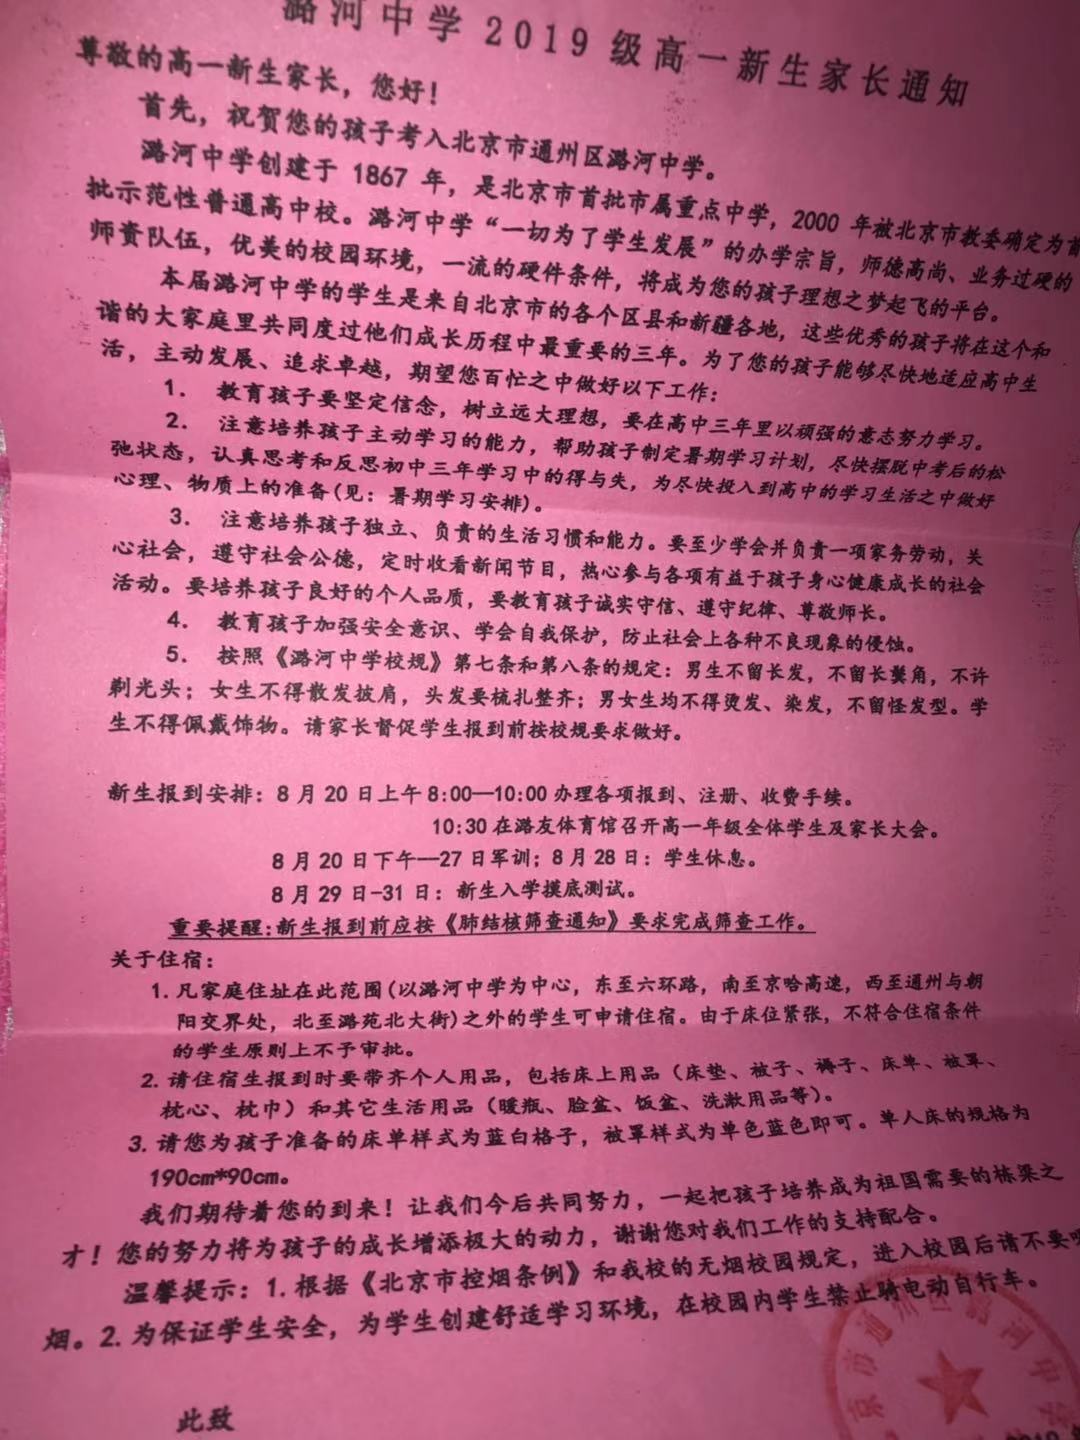 潞河中学2019年新高一入学测试安排